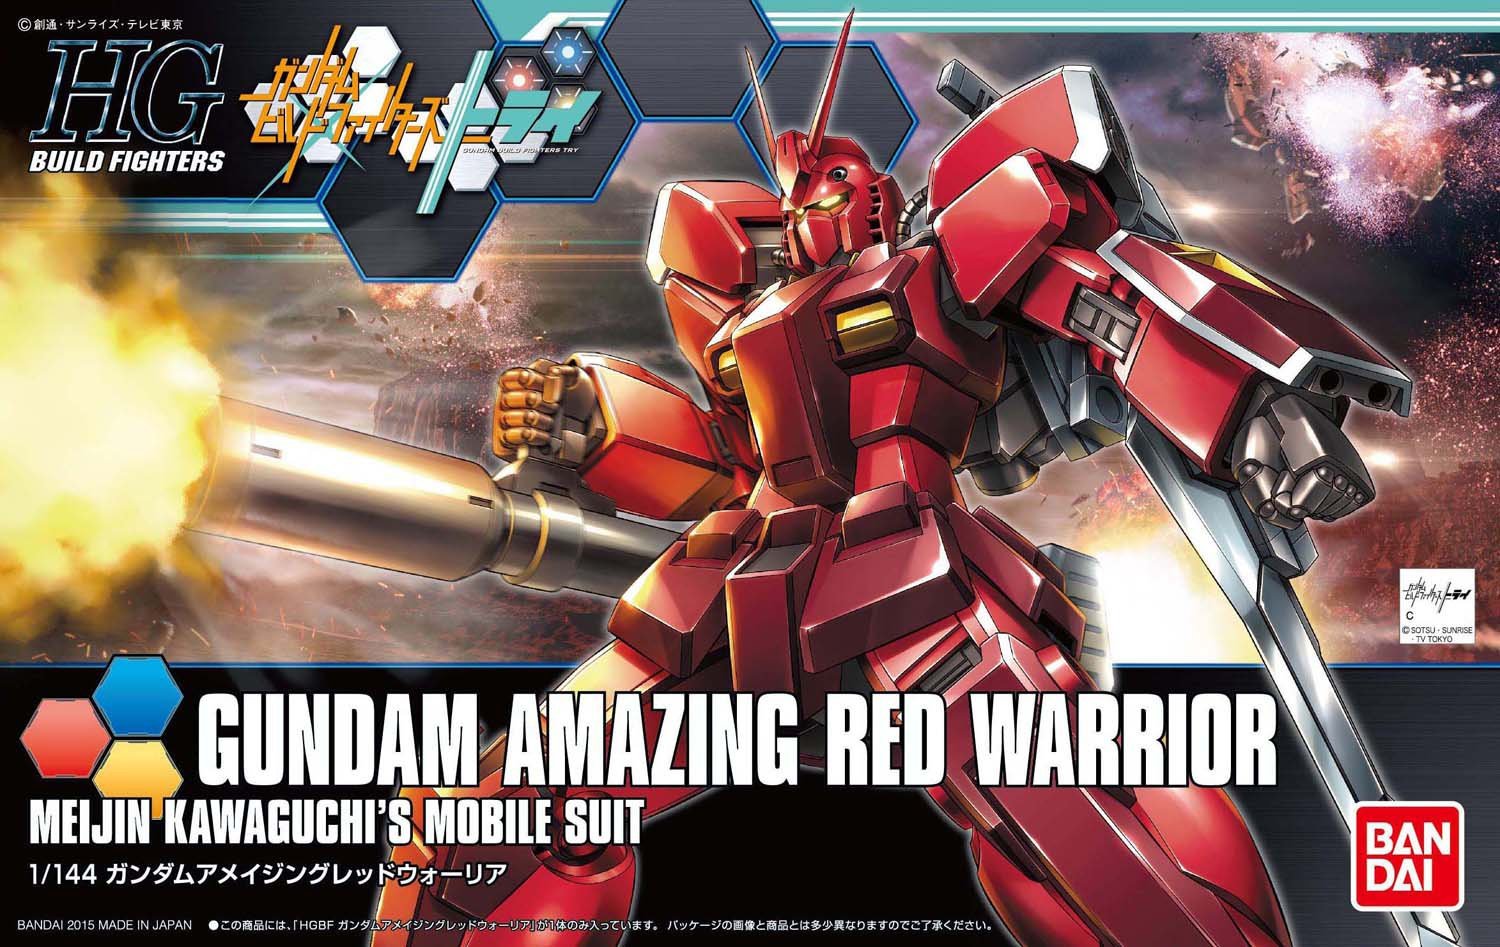 Mô hình Gundam Amazing Red Warrior